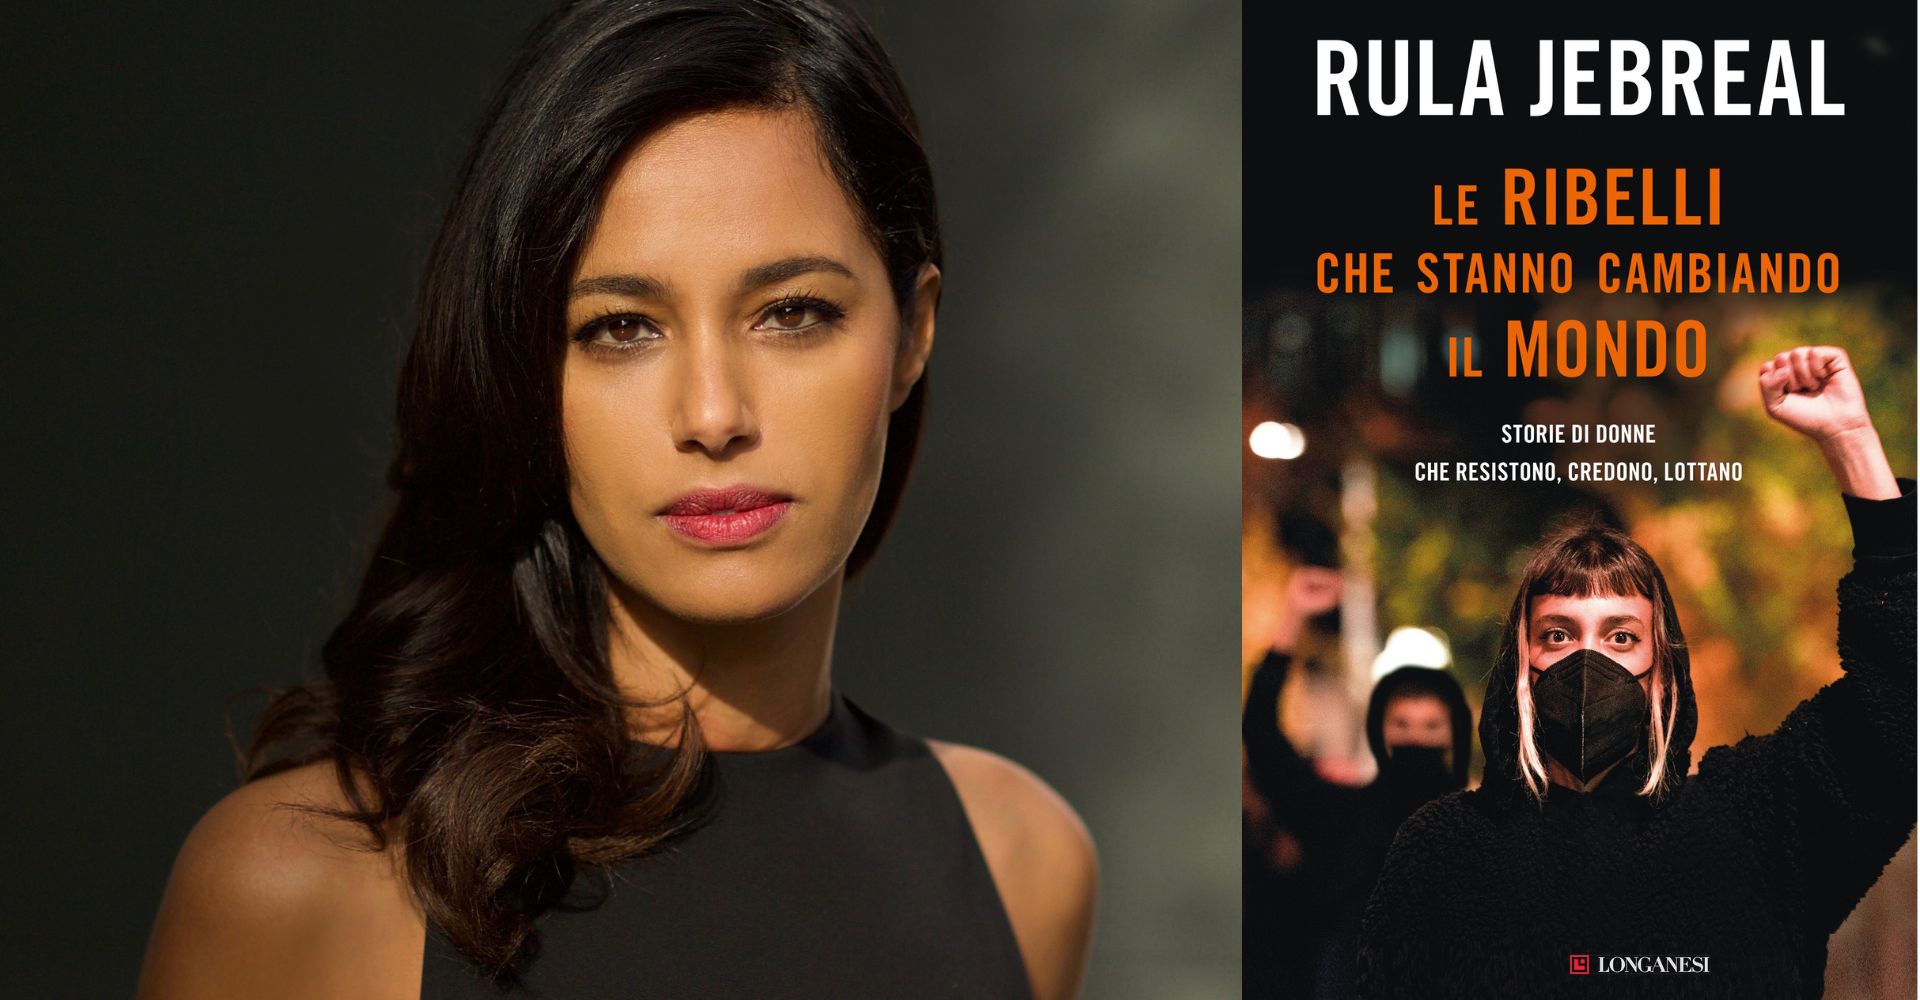 "Le ribelli che stanno cambiando il mondo": il nuovo libro di Rula Jebreal